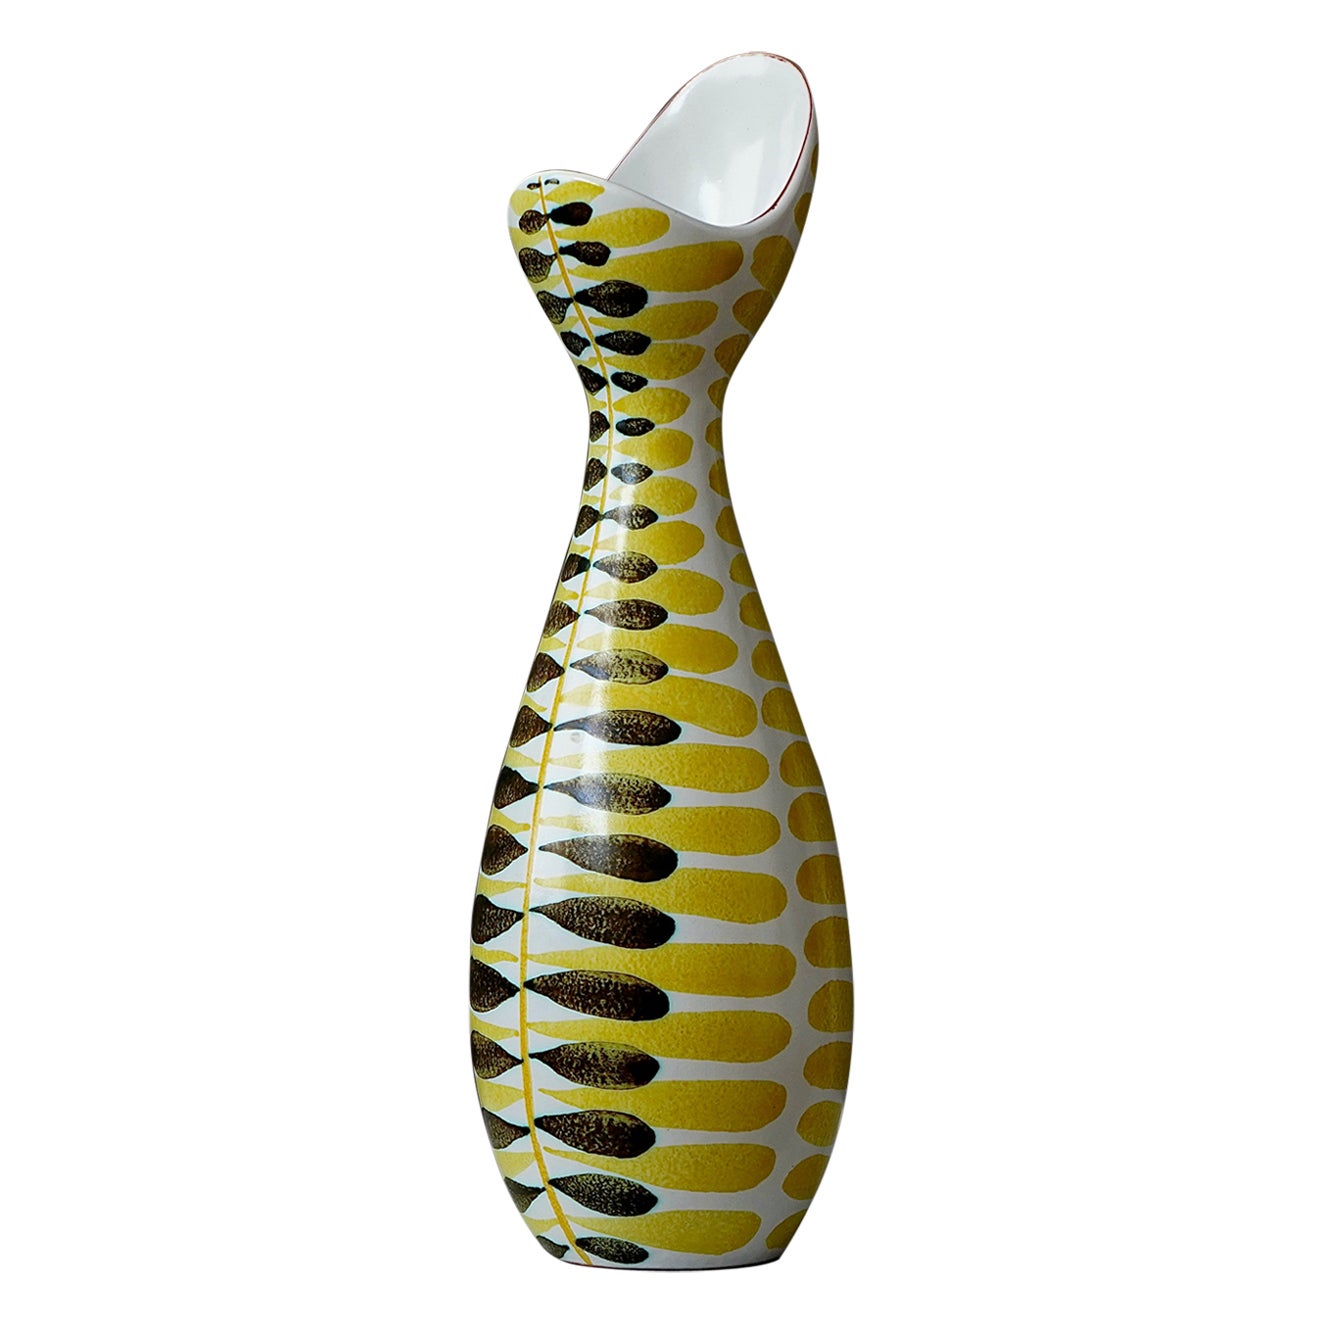 Faience Vase by Stig Lindberg for Gustavsberg Studio, Sweden, 1950s